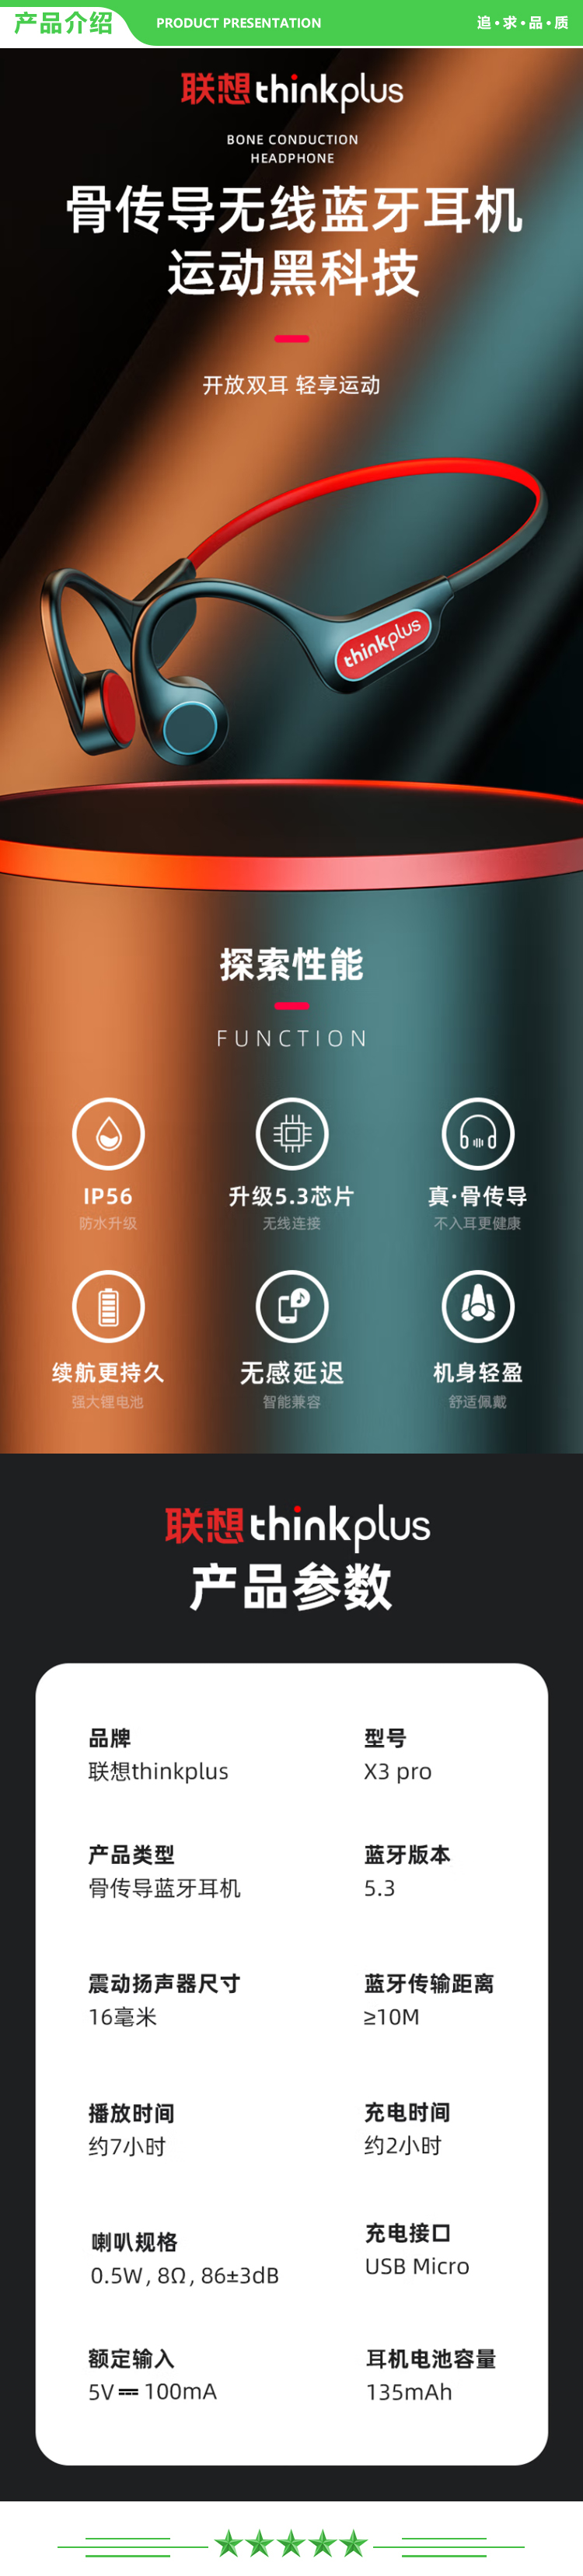 联想 Lenovo thinkplus X3pro 白色 骨传导蓝牙耳机运动无线耳挂式 不入耳跑步骑行 手机通用蓝牙5.3 .jpg